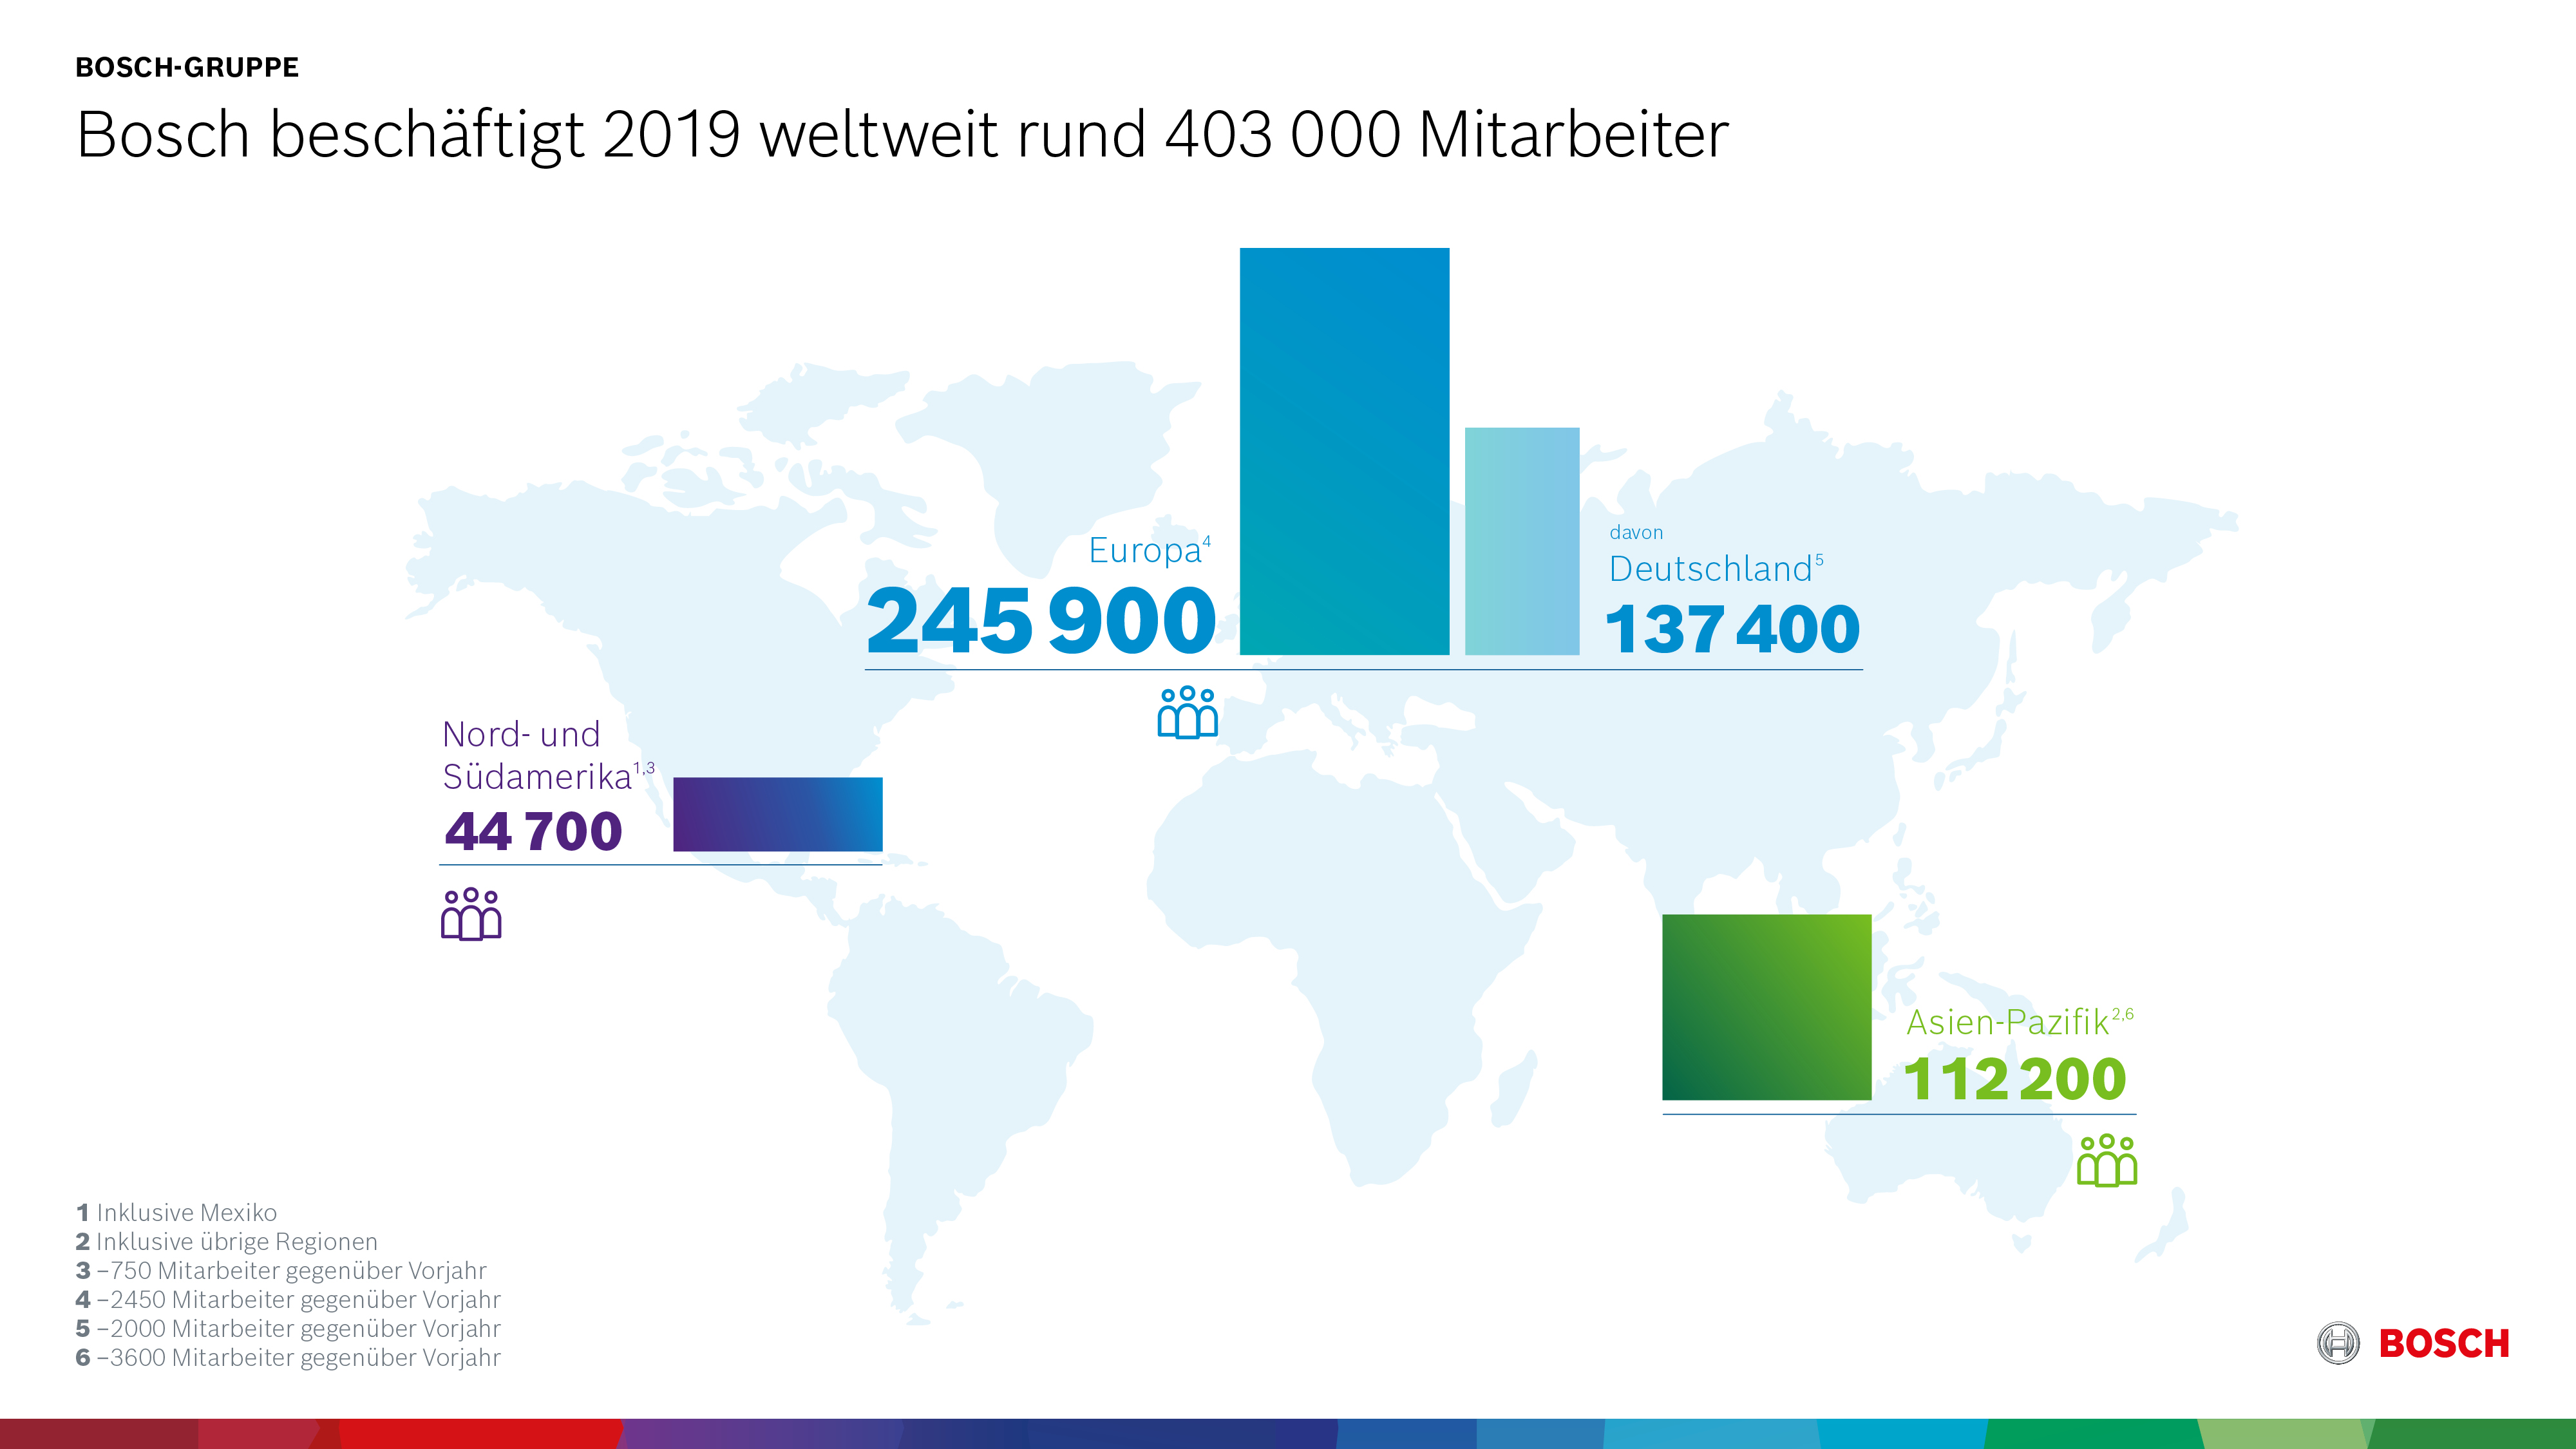 Bosch beschäftigt 2019 weltweit rund 403 000 Mitarbeiter